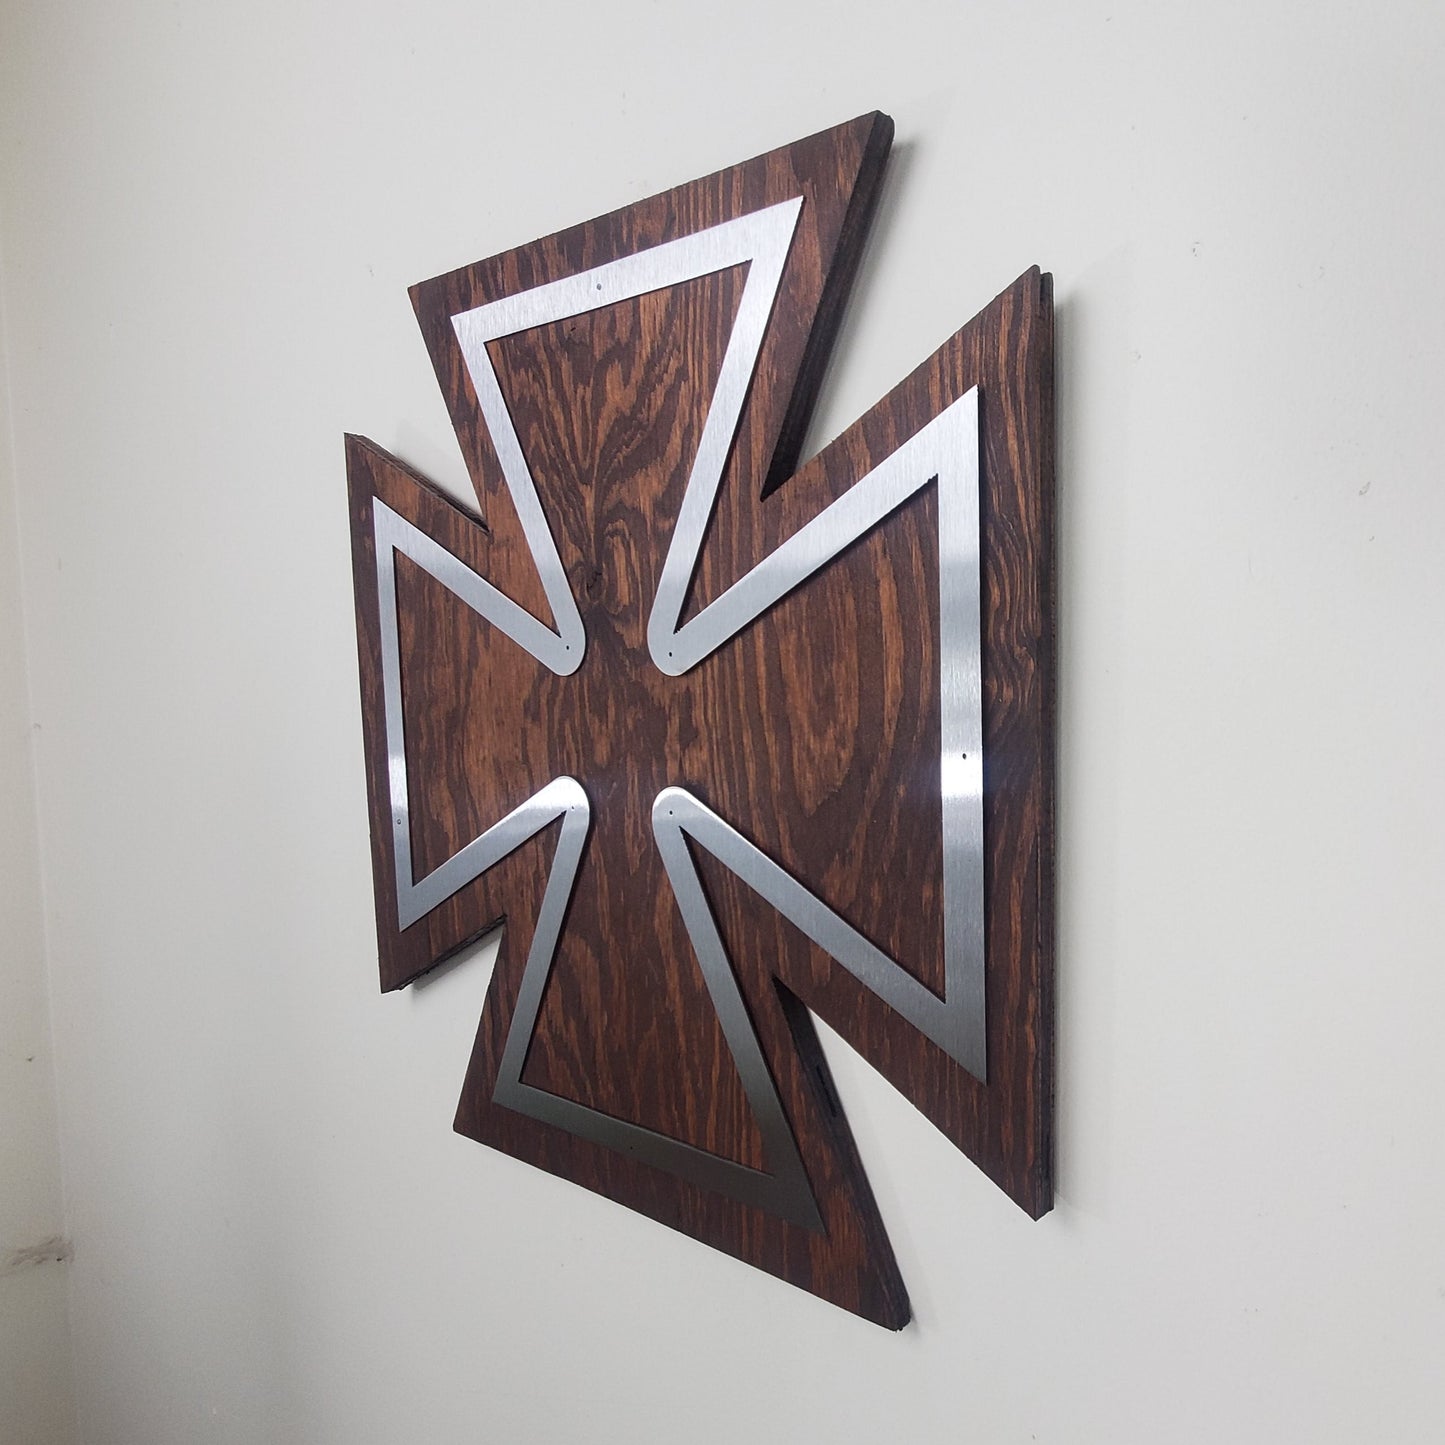 Maltese Cross metal art on wood side view